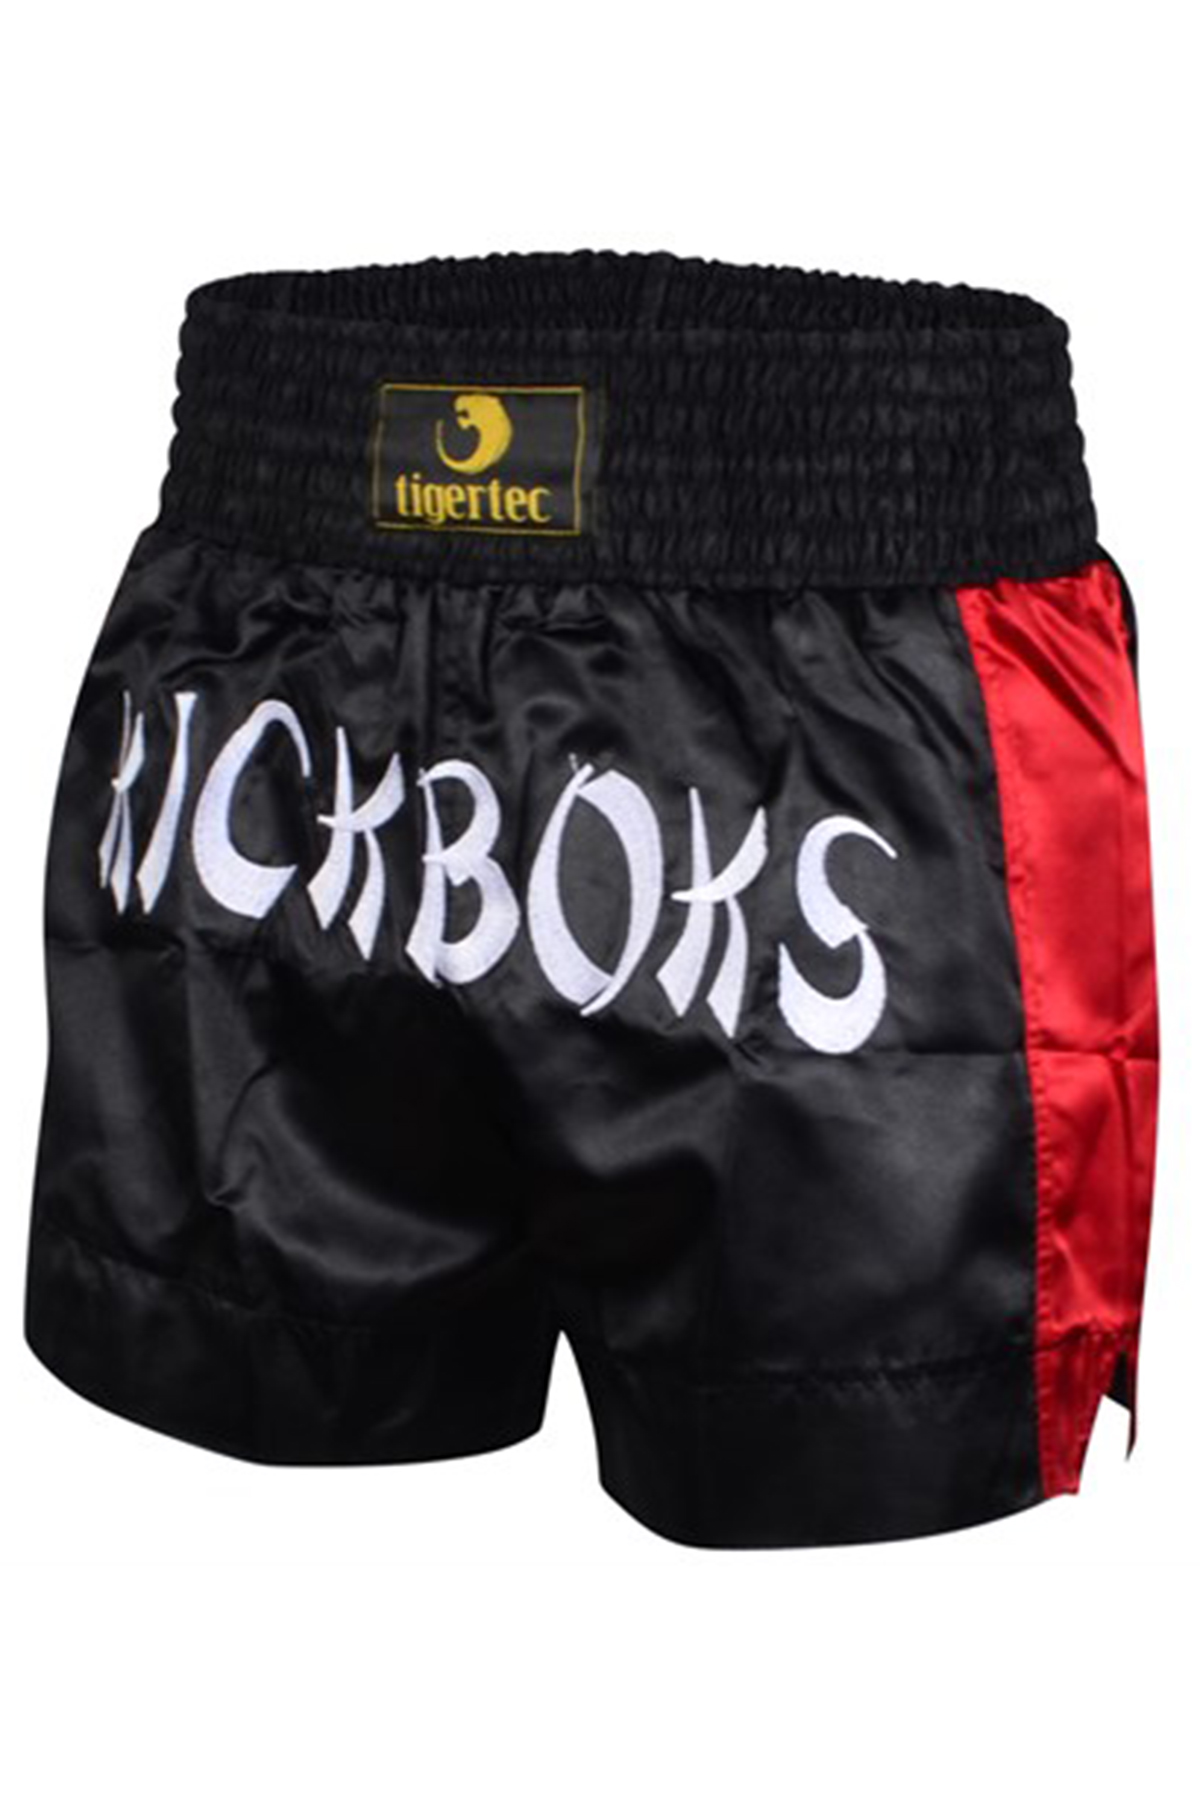 Tigertec Punch Kick Boks Şortu-Siyah